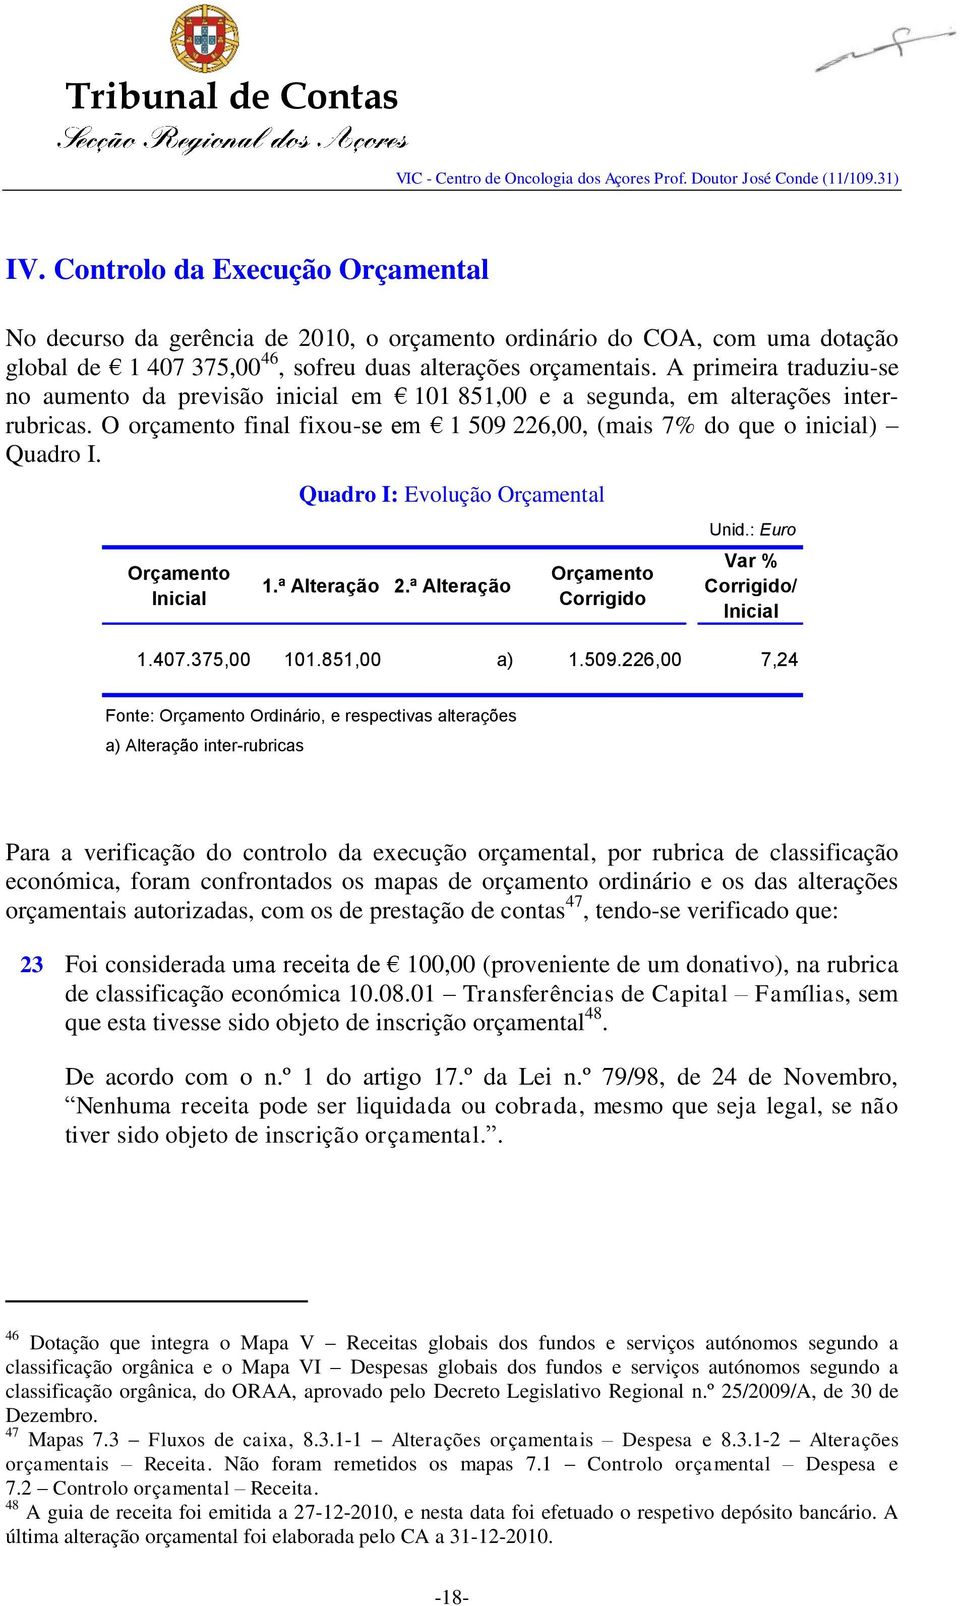 Orçamento Inicial Quadro I: Evolução Orçamental 1.ª Alteração 2.ª Alteração Orçamento Corrigido Unid.: Euro Var % Corrigido/ Inicial 1.407.375,00 101.851,00 a) 1.509.